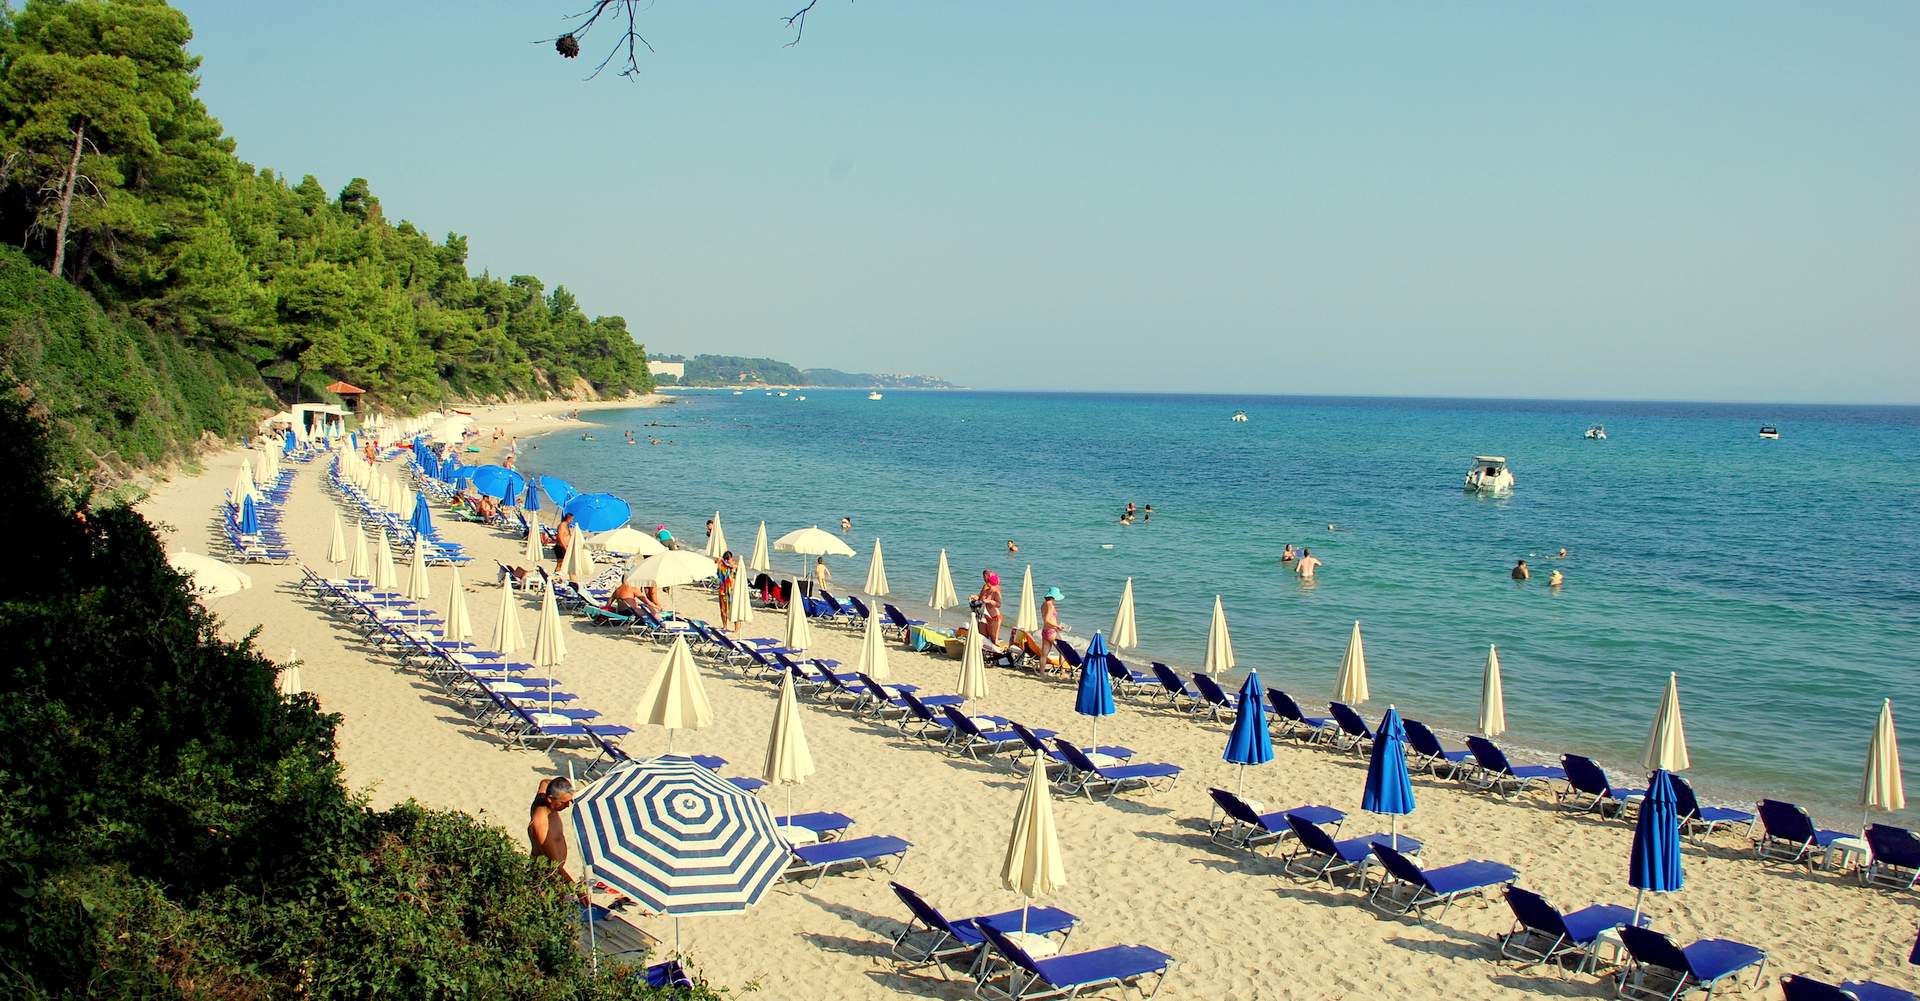 Κρυοπηγή ή Πηγαδάκια παραλία, Κασσάνδρα, Χαλκιδική, Ελλάδα